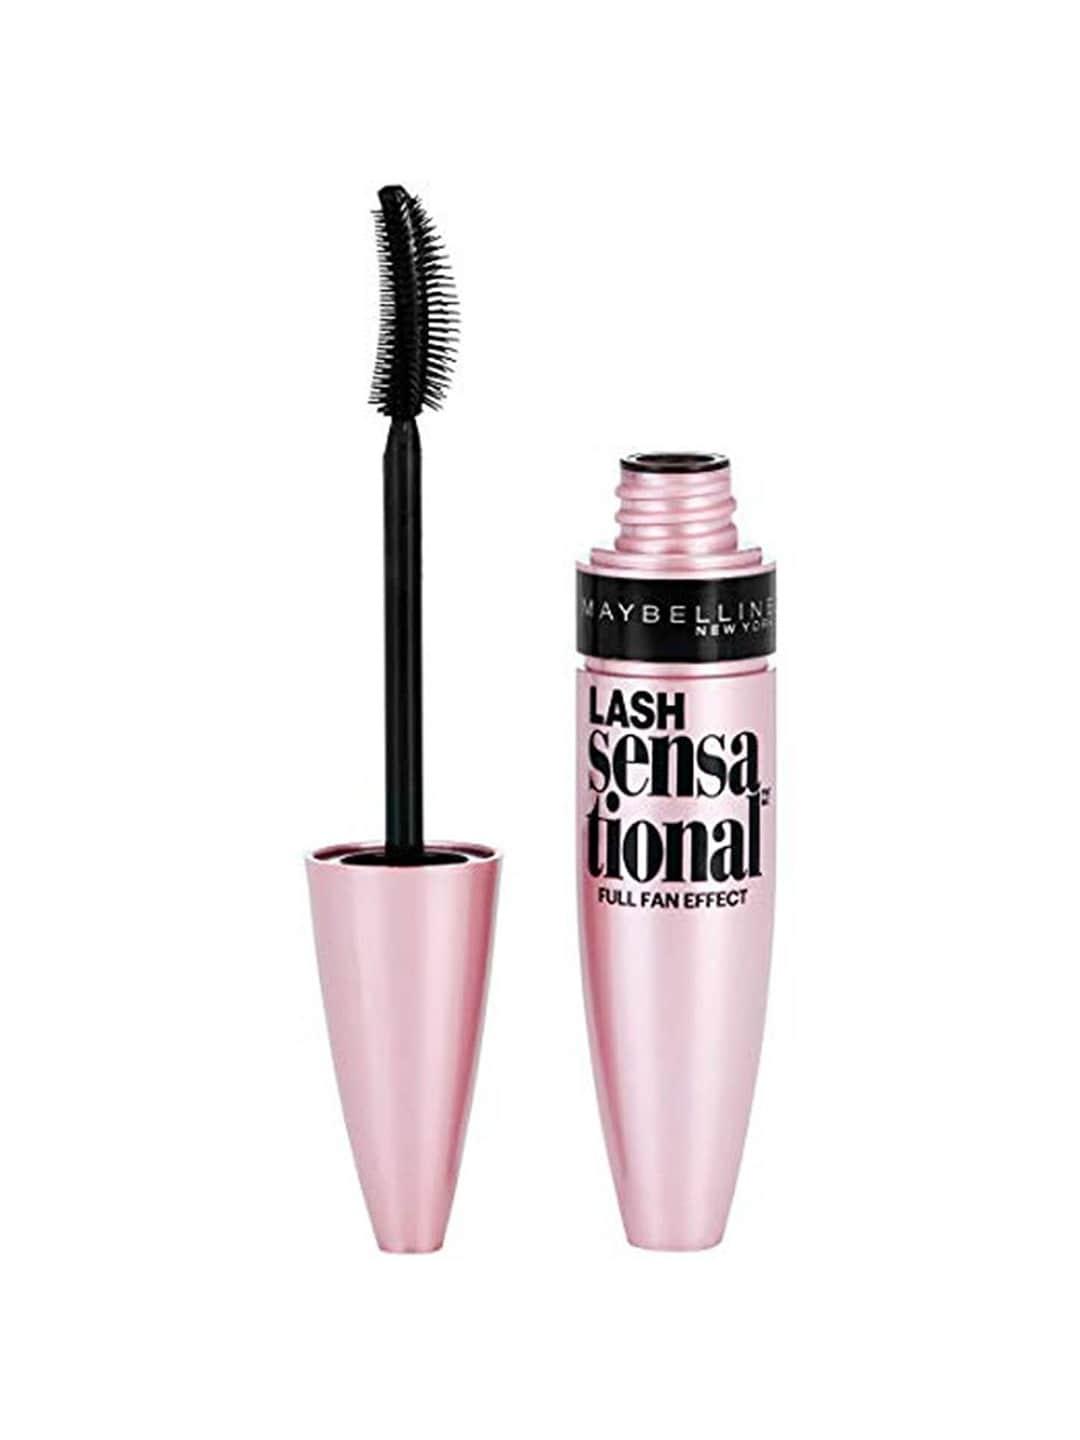 maybelline new york lash sensational full fan effect waterproof mascara 10ml - black